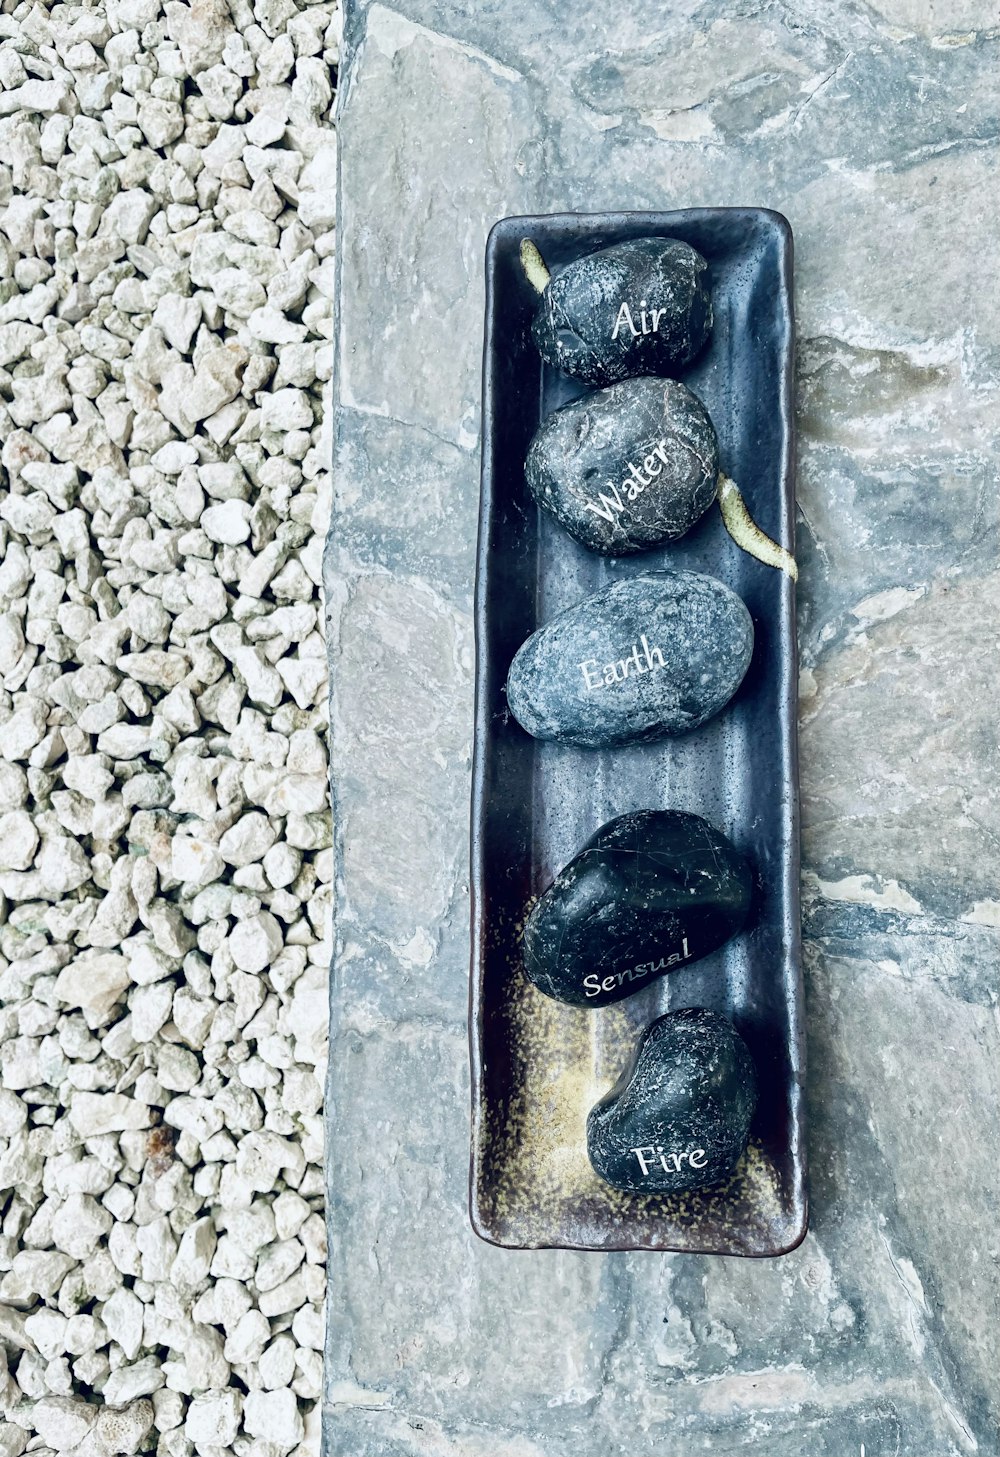 three rocks in a black tray on a stone floor